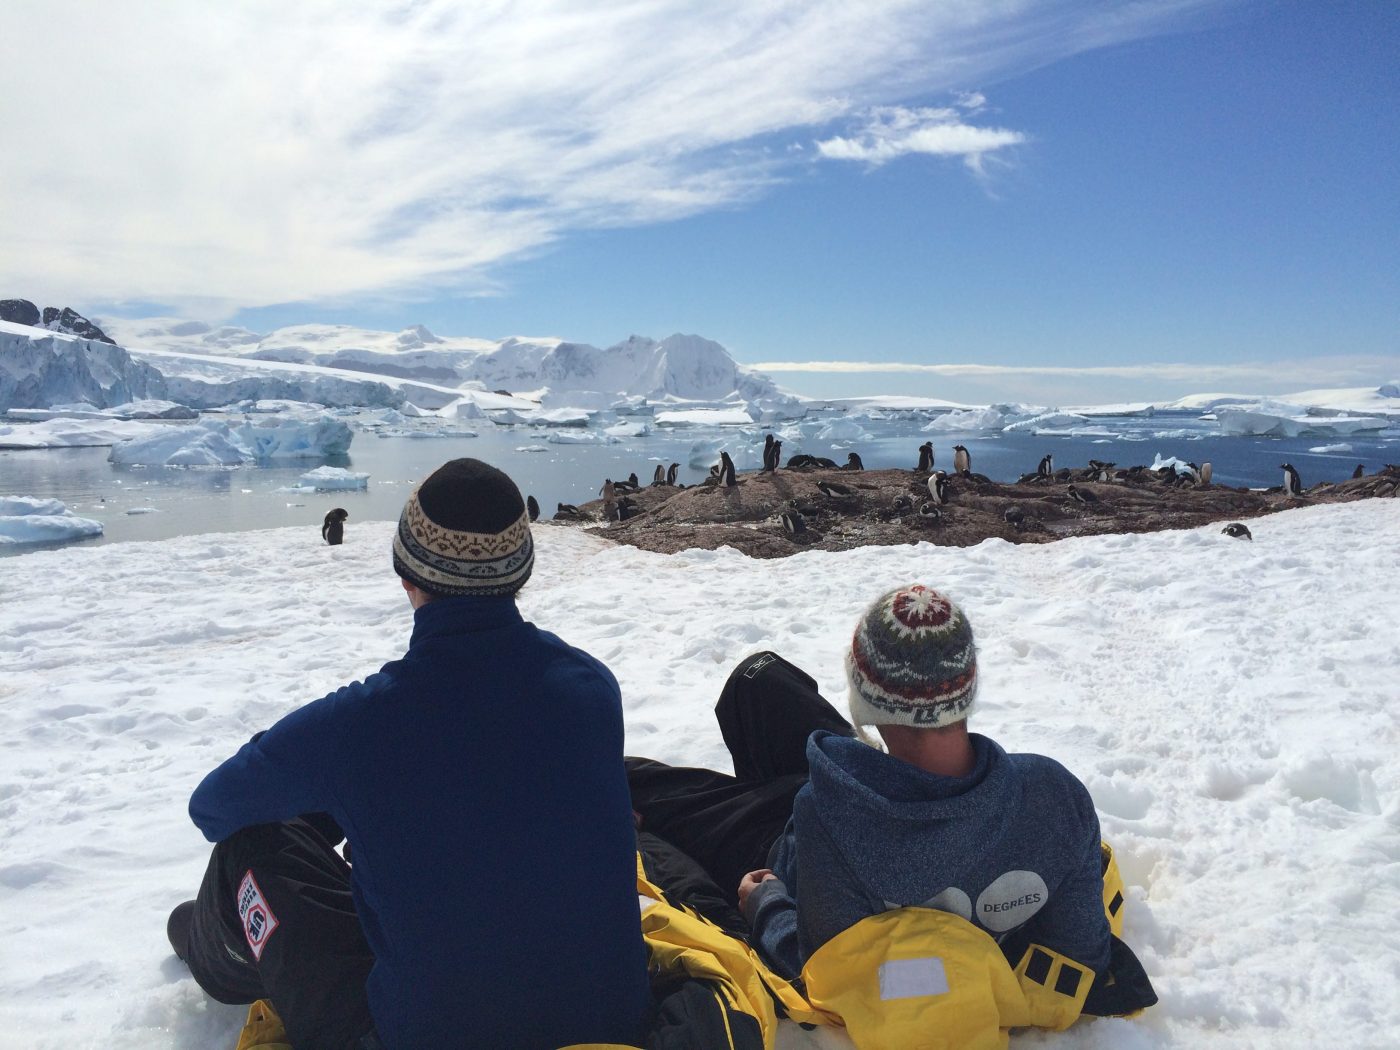 Visiting Antarctica as a tourist